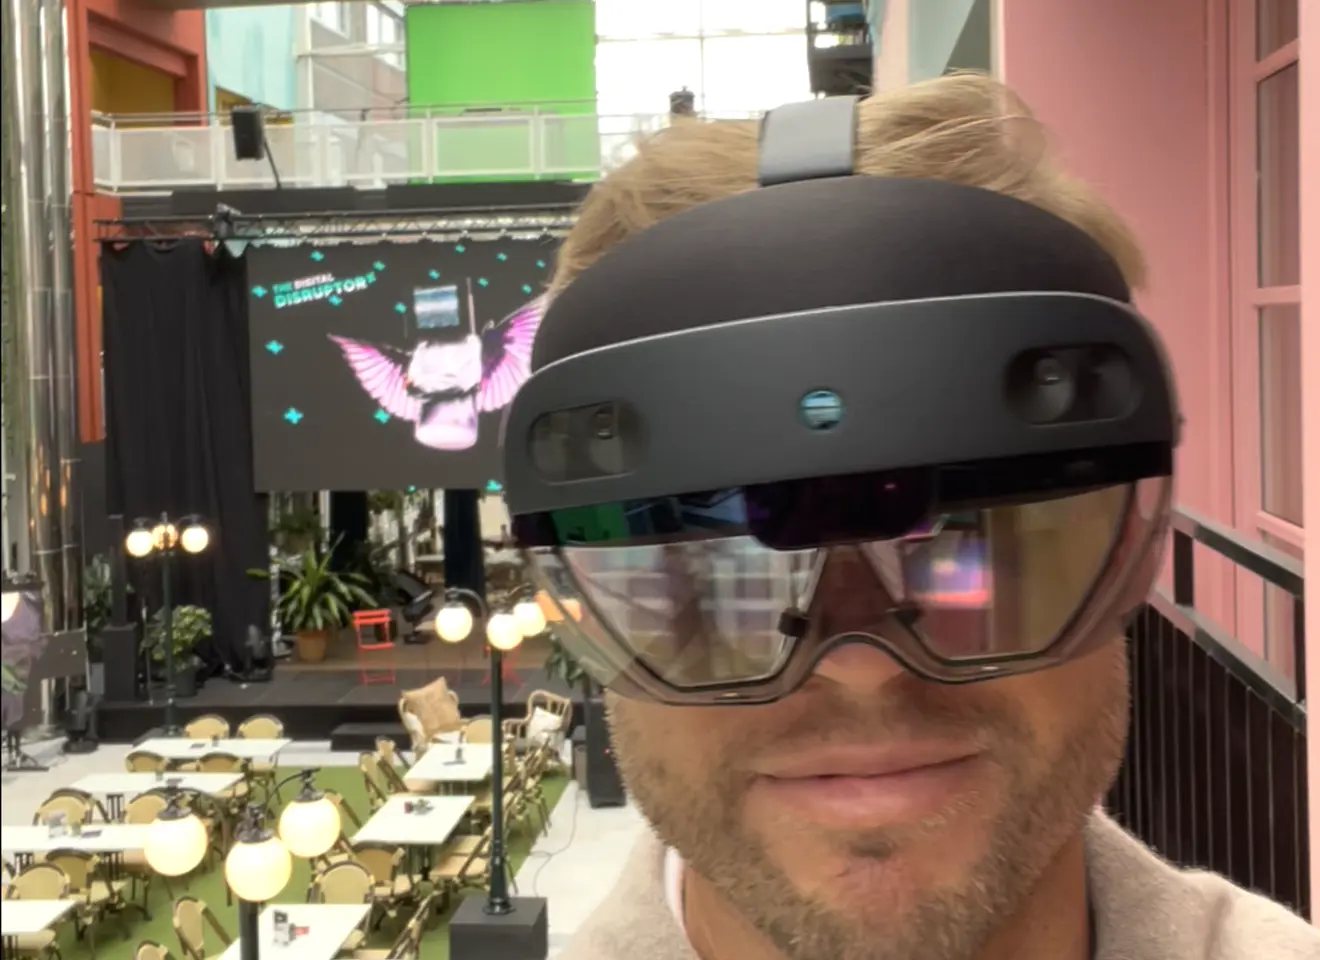 Ukas medlem Chrisopher Hoftuns sitter med VR-briller og ser inn i kamera.